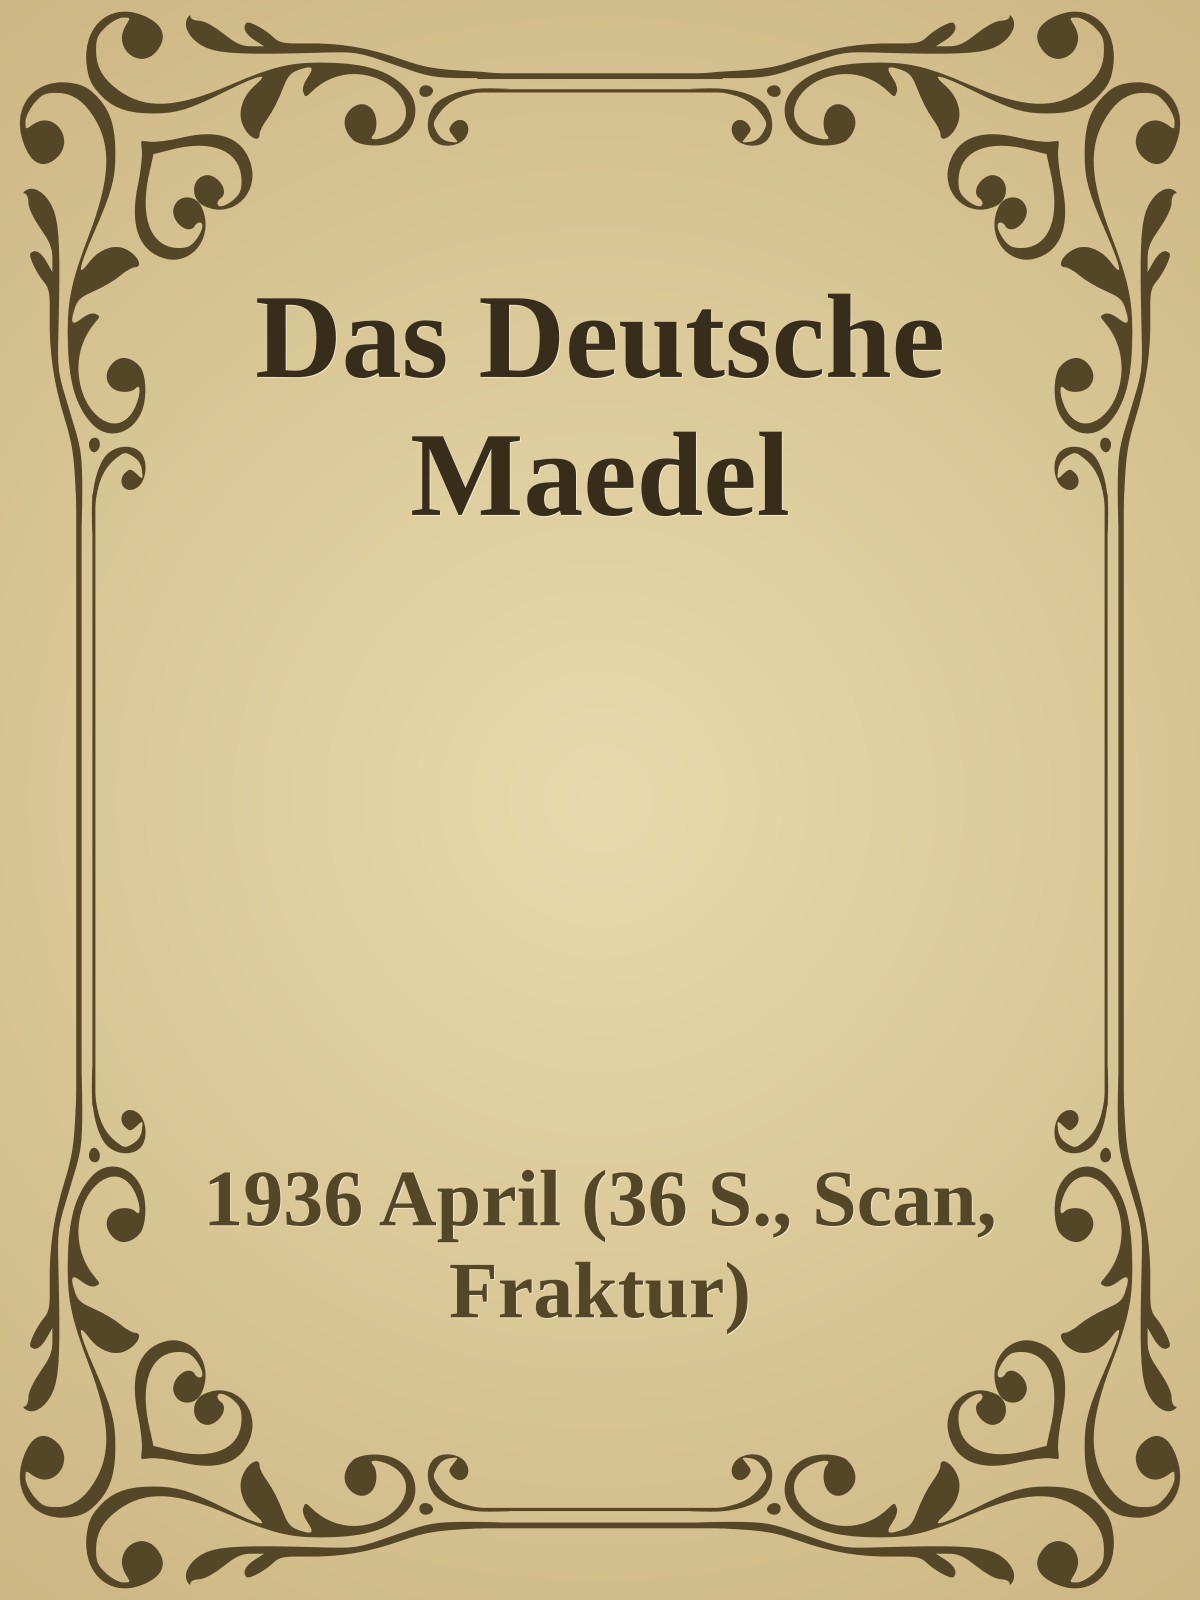 Das Deutsche Mädel (1936 April (36 S., Scan, Fraktur))